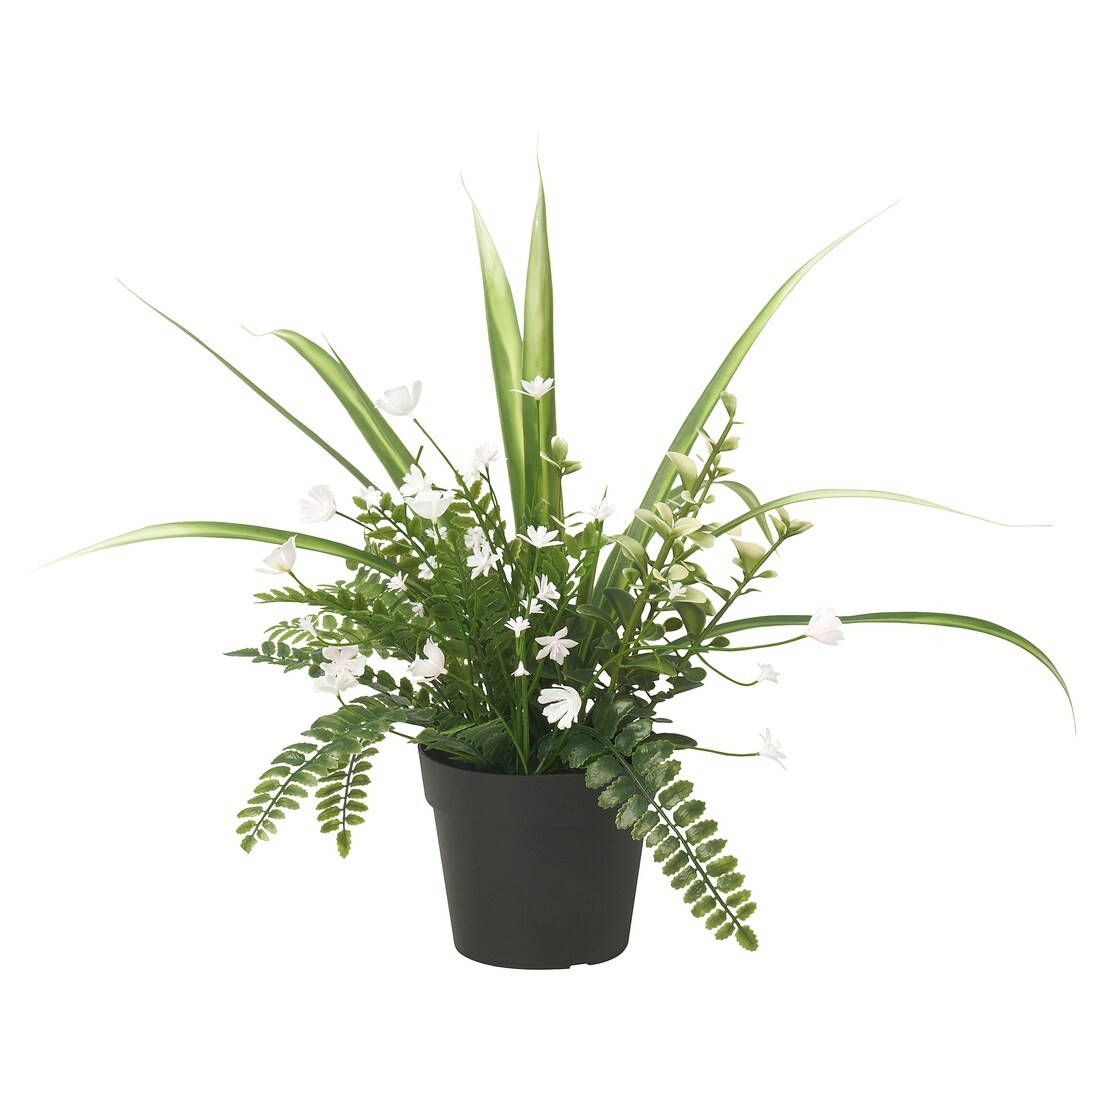 FEJKA Искусственное растение в горшке, для дома / для улицы / икебана, 9 см